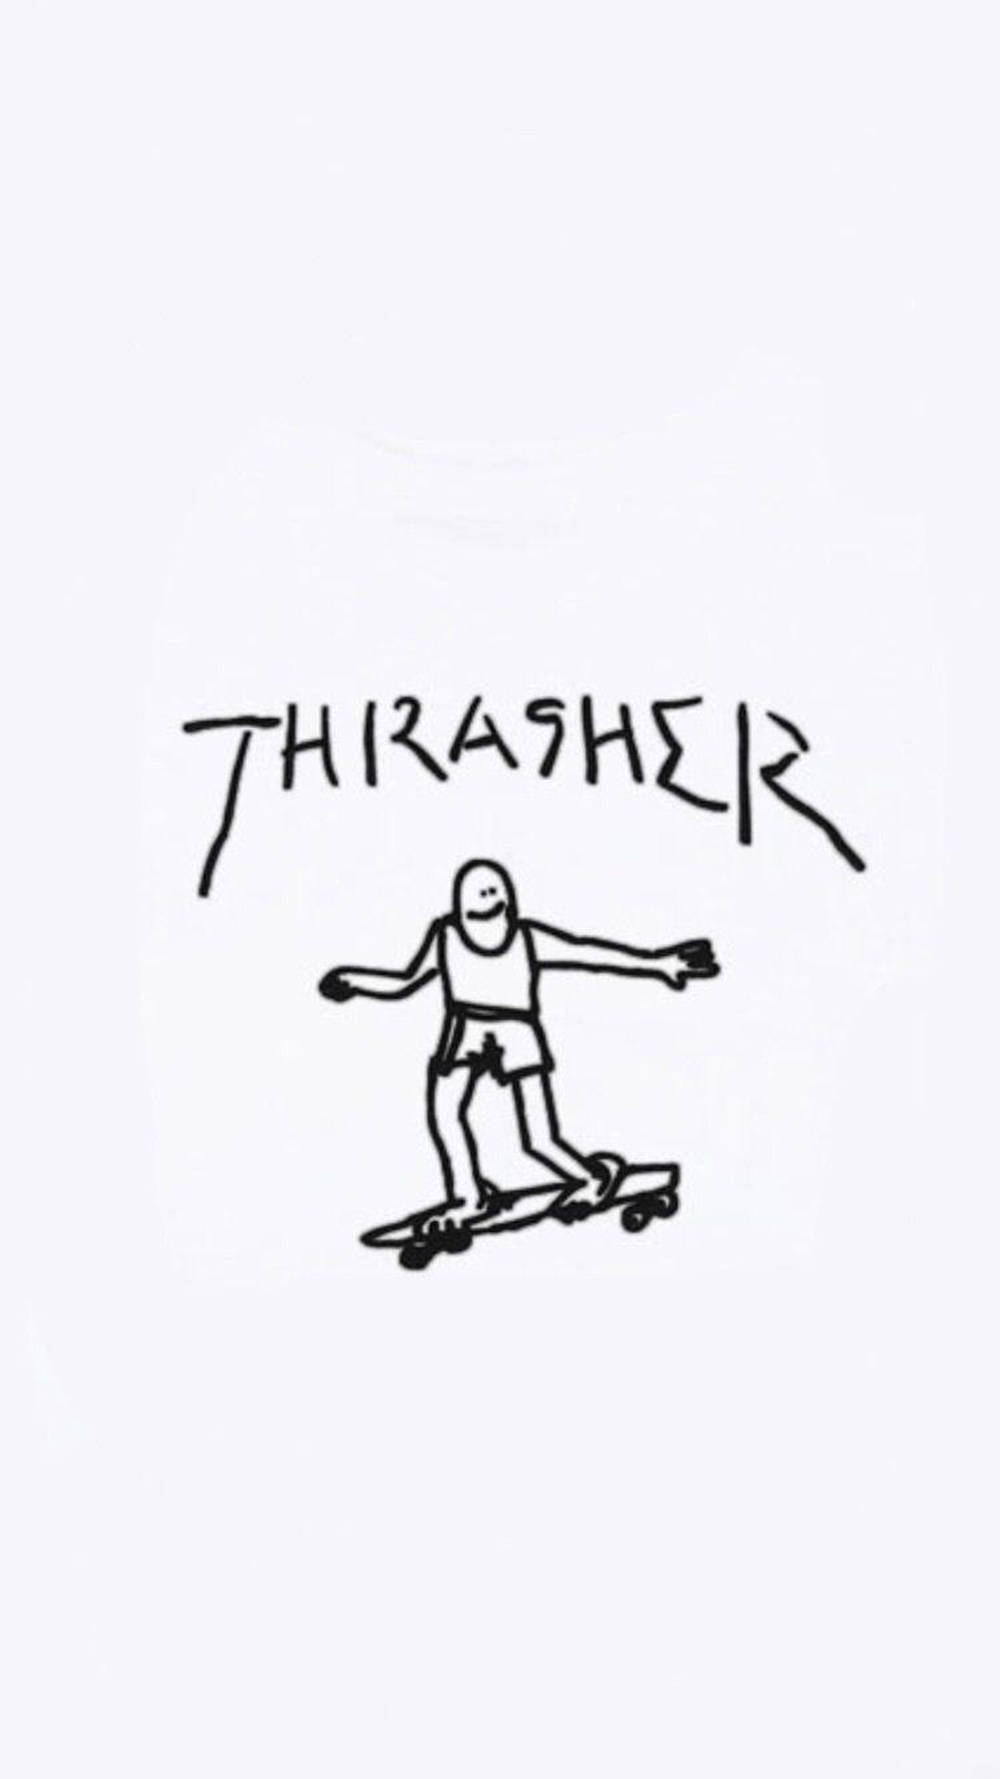 Skater Aesthetic Thrasher Stick Figure Wallpaper